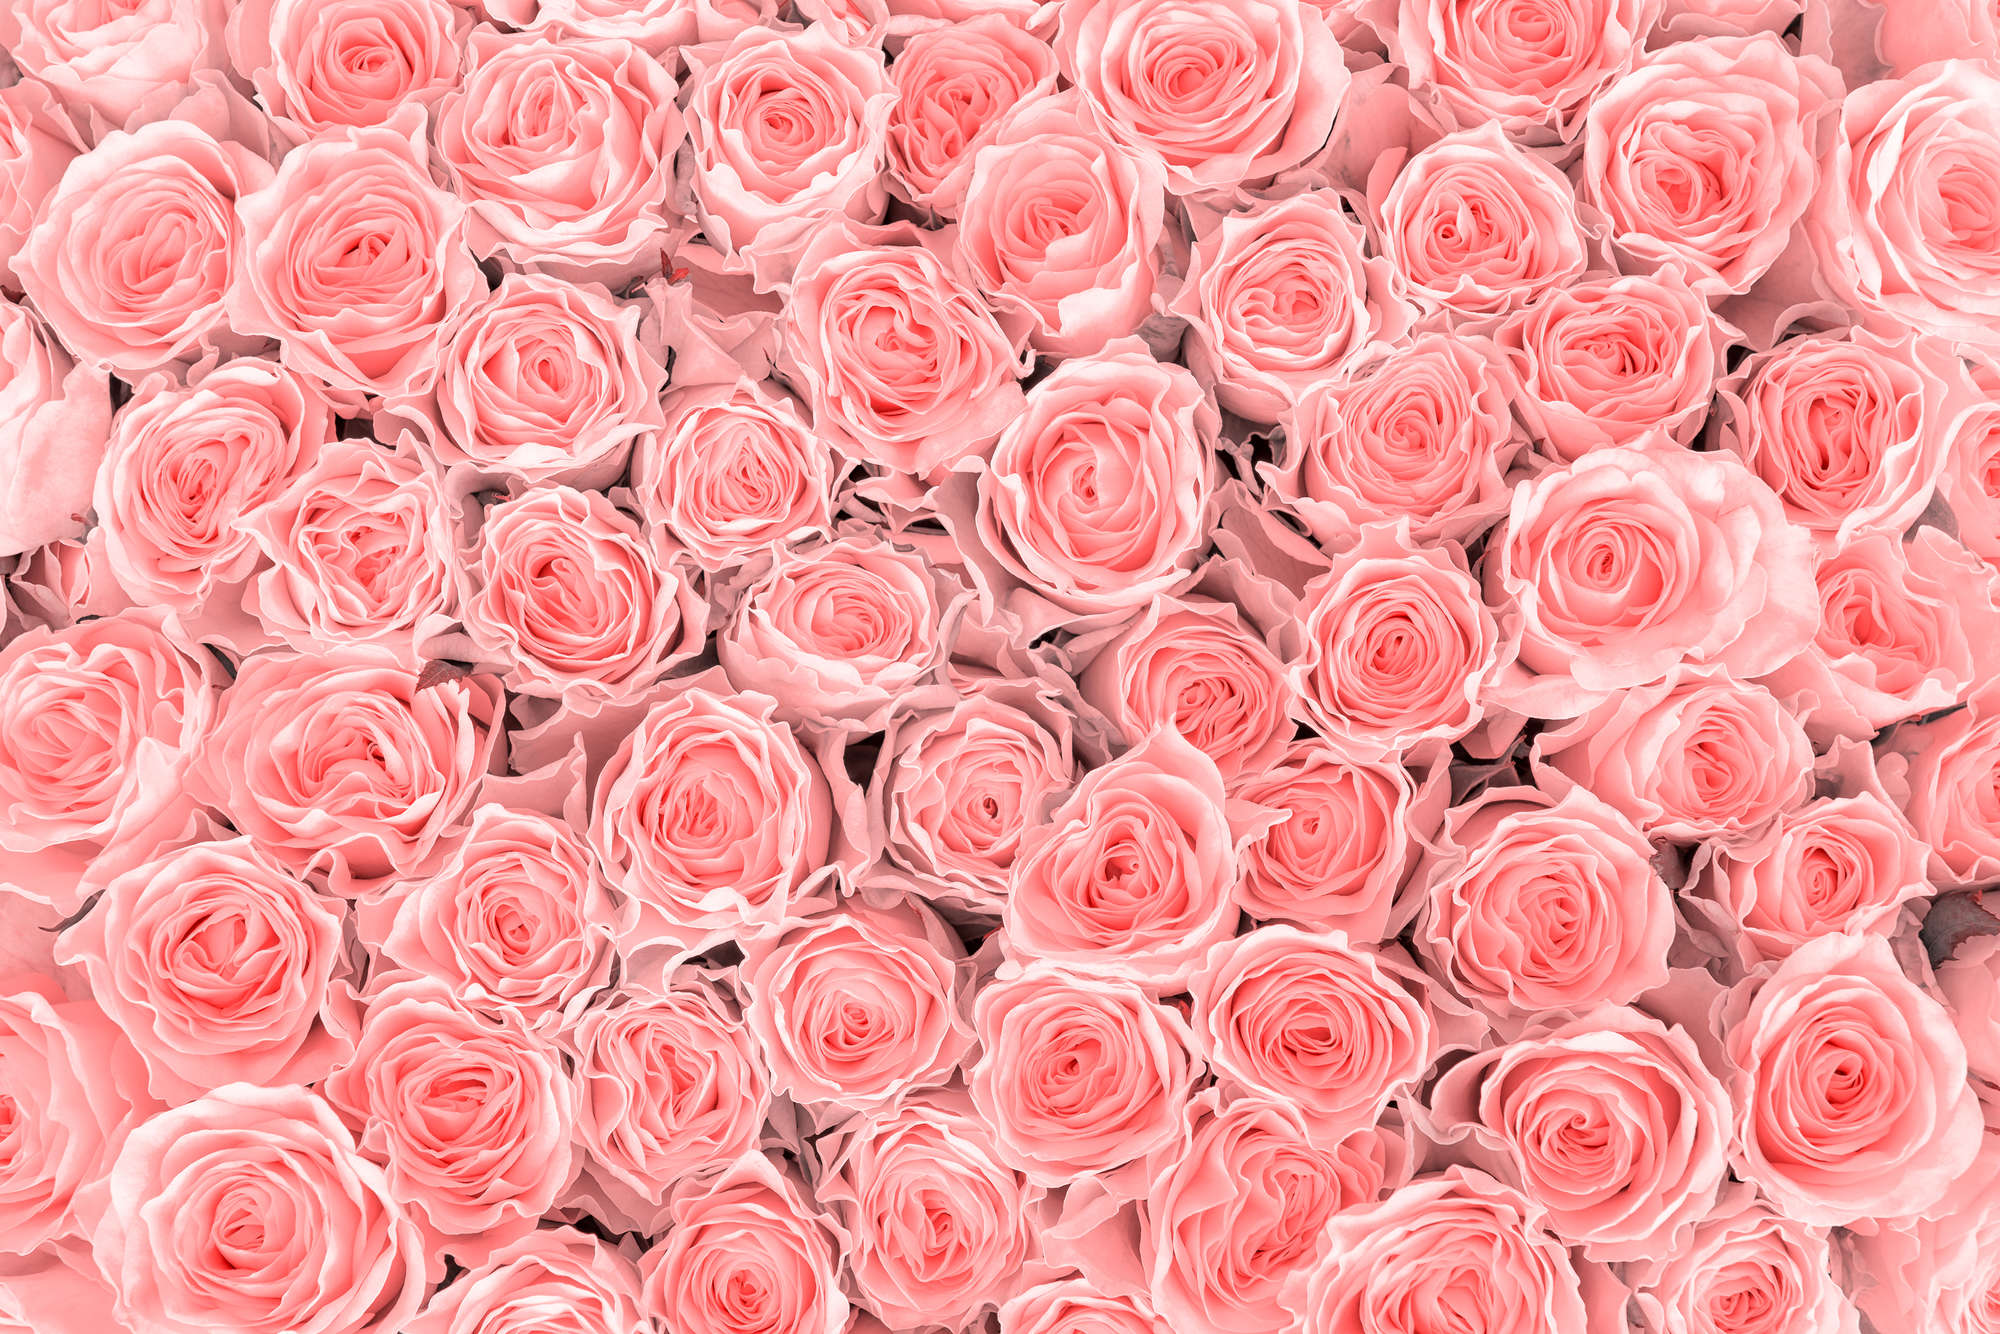             Papel pintado de plantas Rosas en vellón liso de primera calidad
        